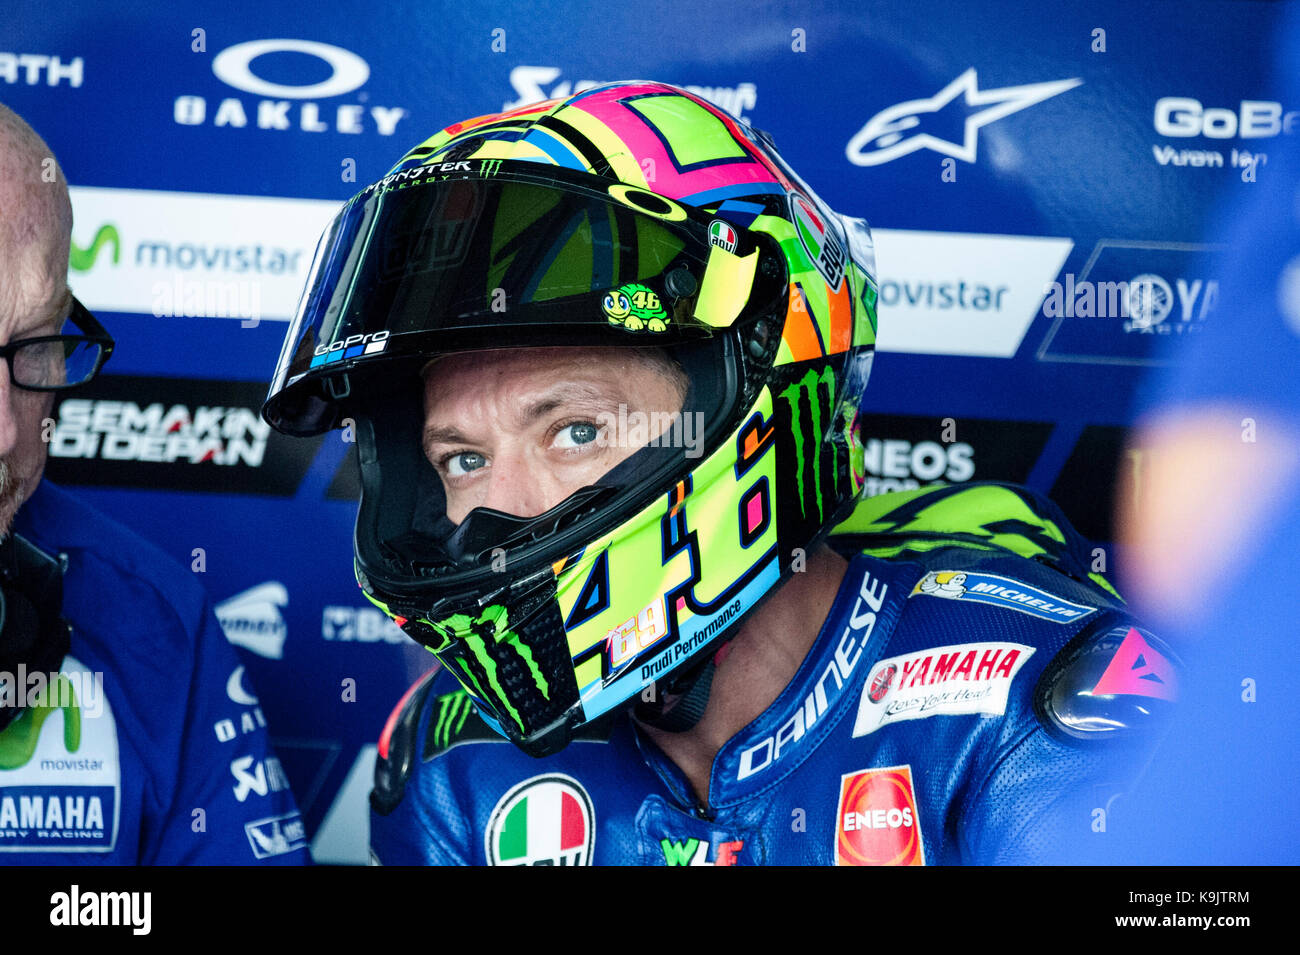 Aragona, Spagna. 23 settembre, 2017. Valentino Rossi della movistar team Yamaha è in garage durante le qualifiche sabato dell'aragona gran premio di motogp. Credito: pablo guillen/alamy live news Foto Stock